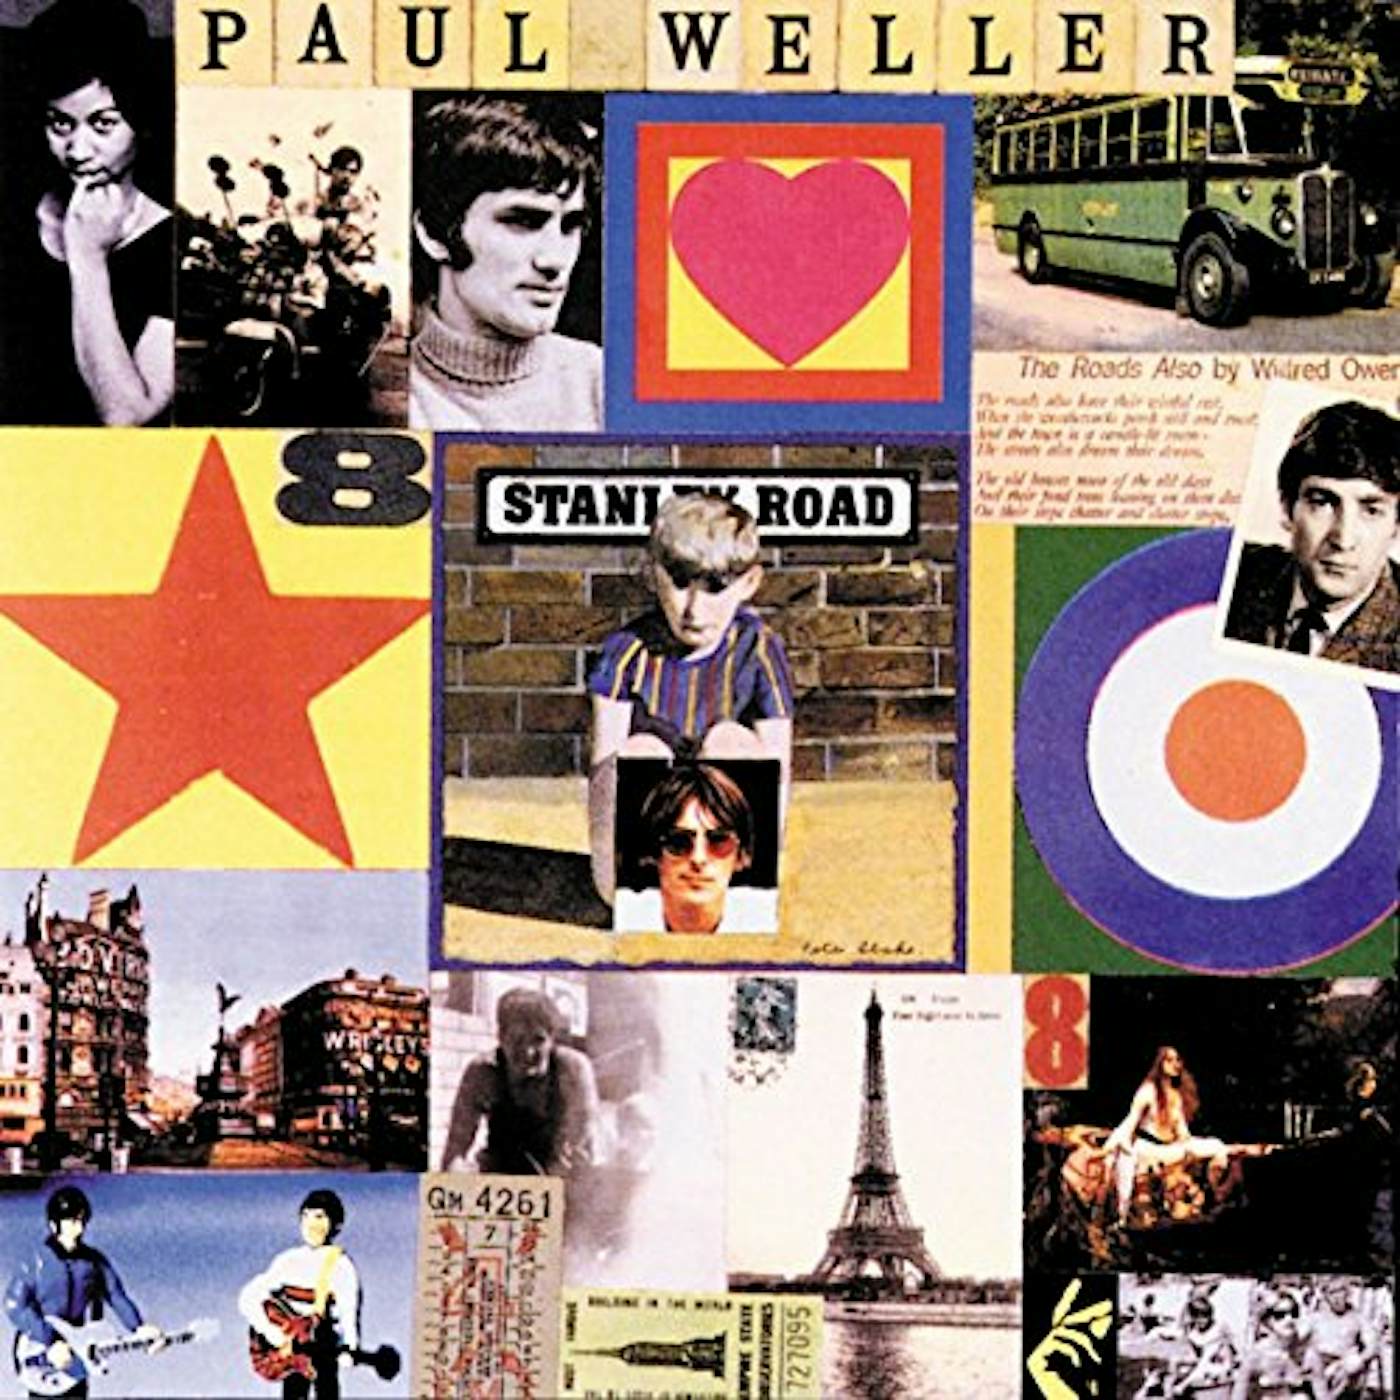 Paul Weller Stanley Road Vinyl Record